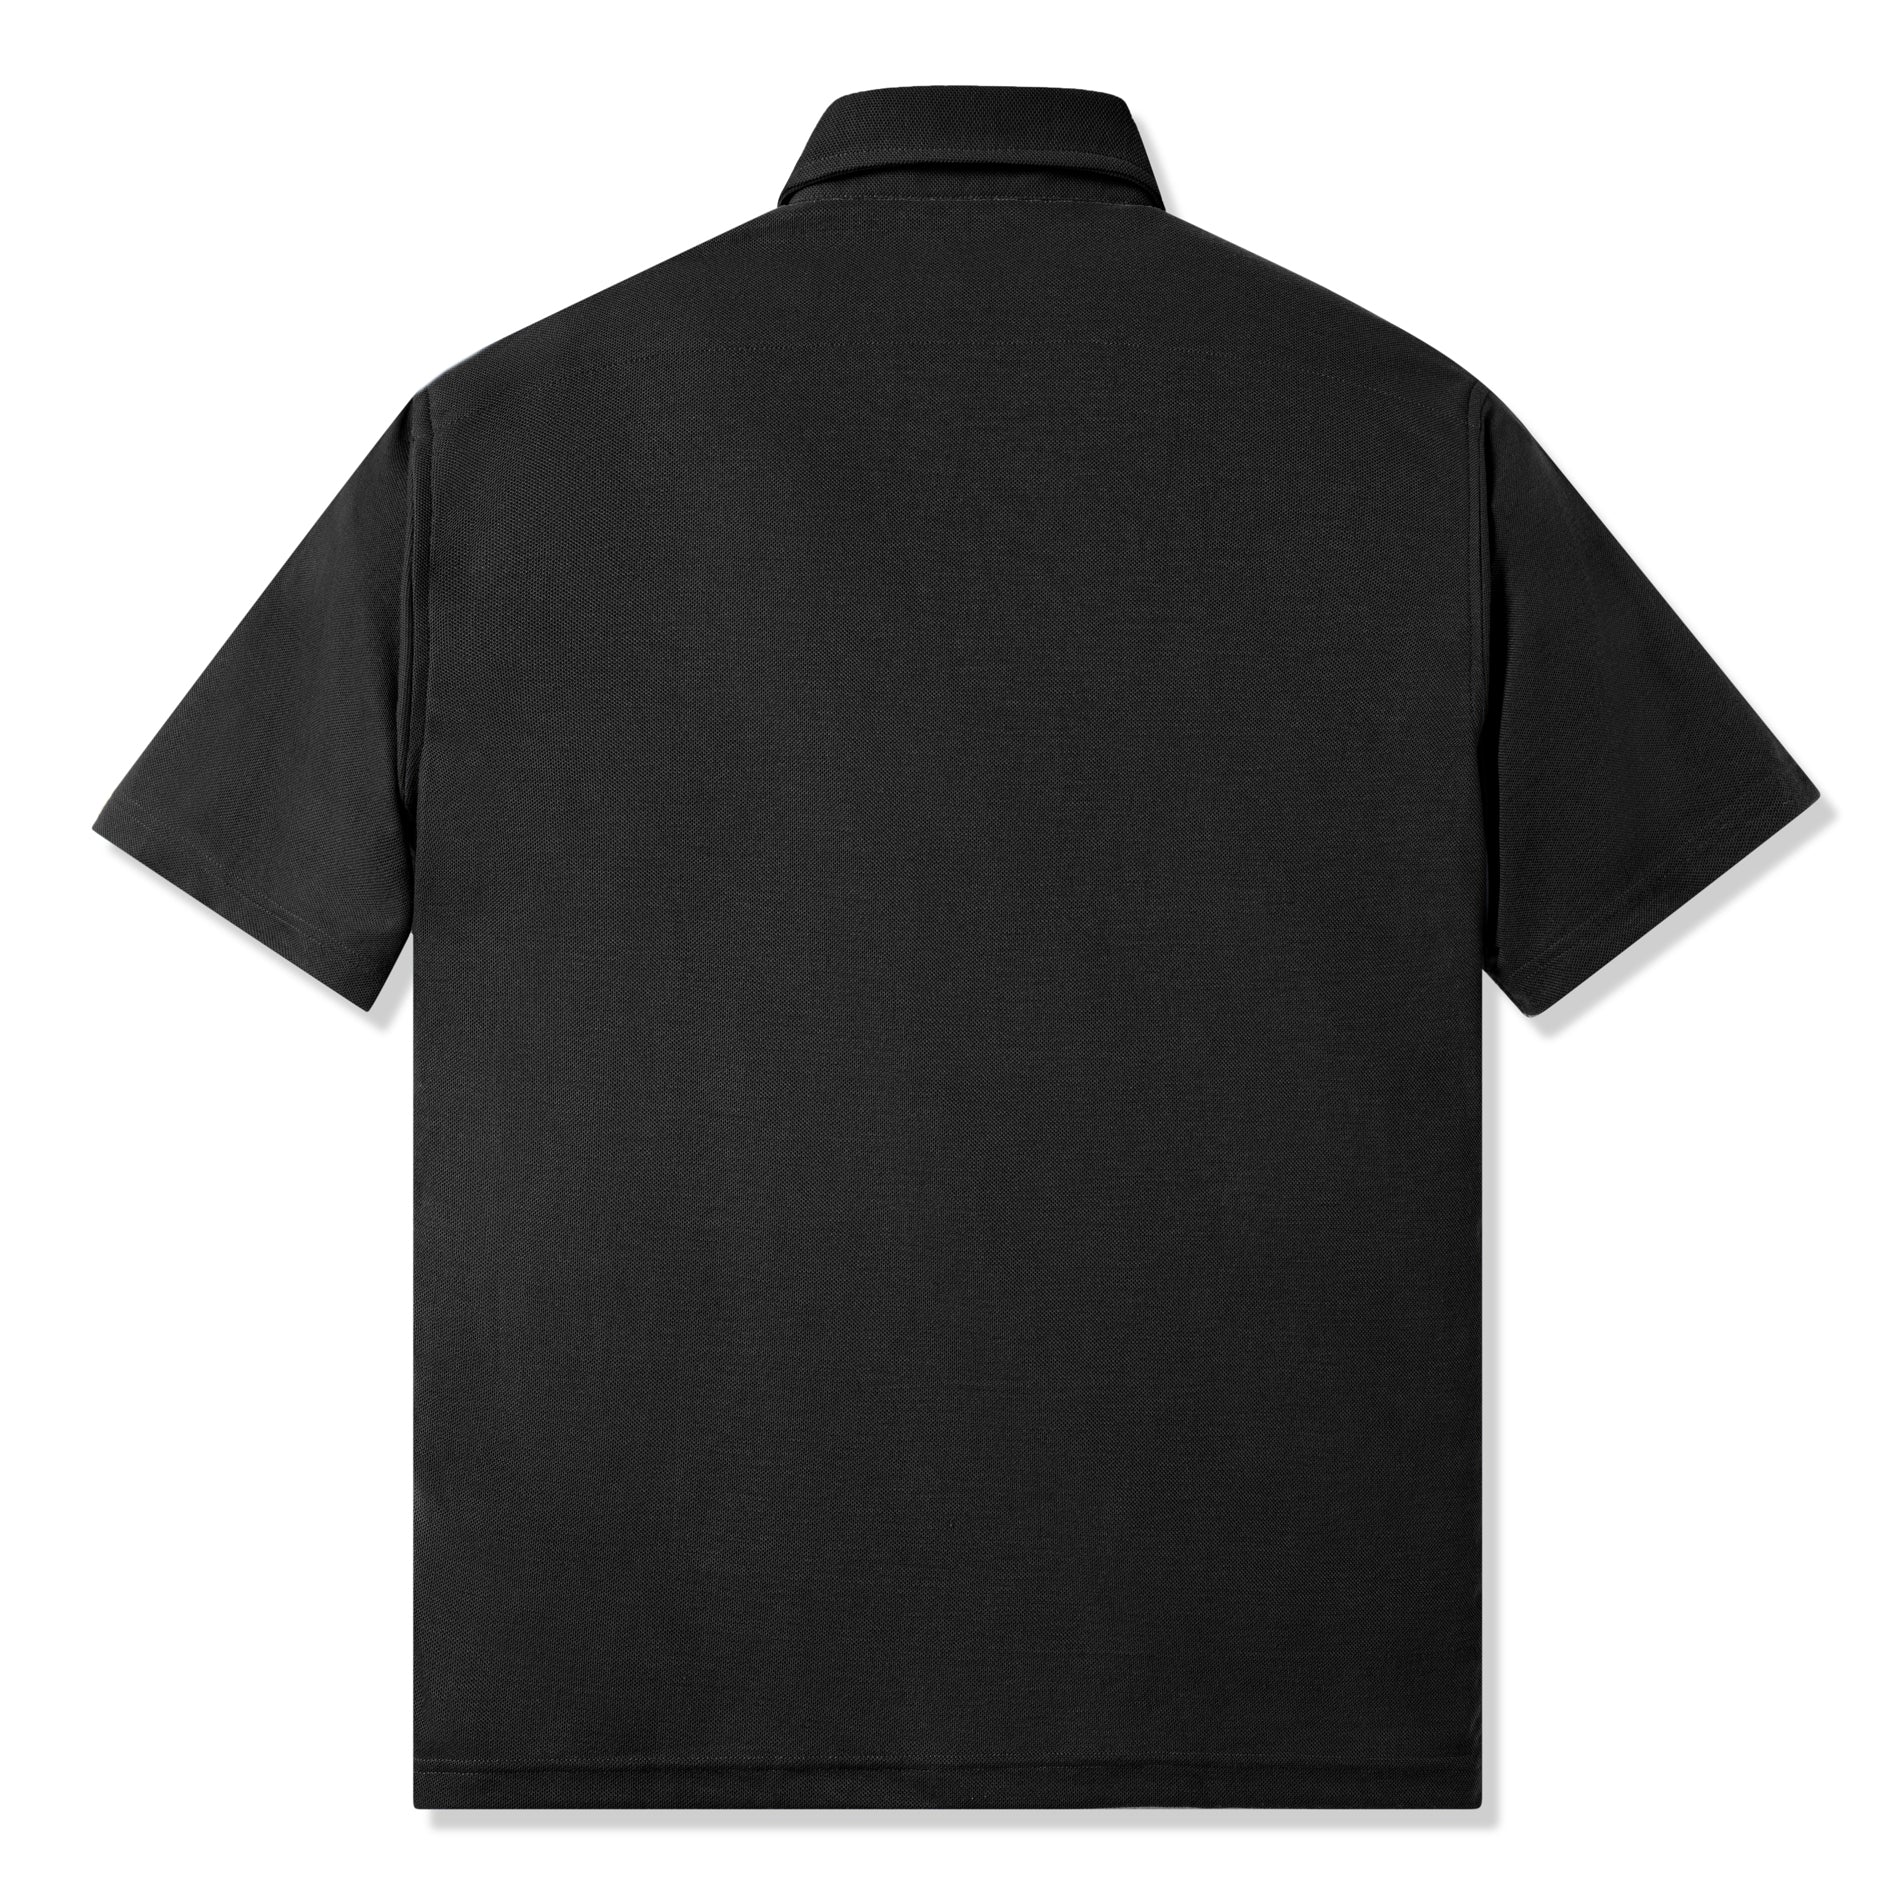 Parisian Polo Short Sleeve - Black